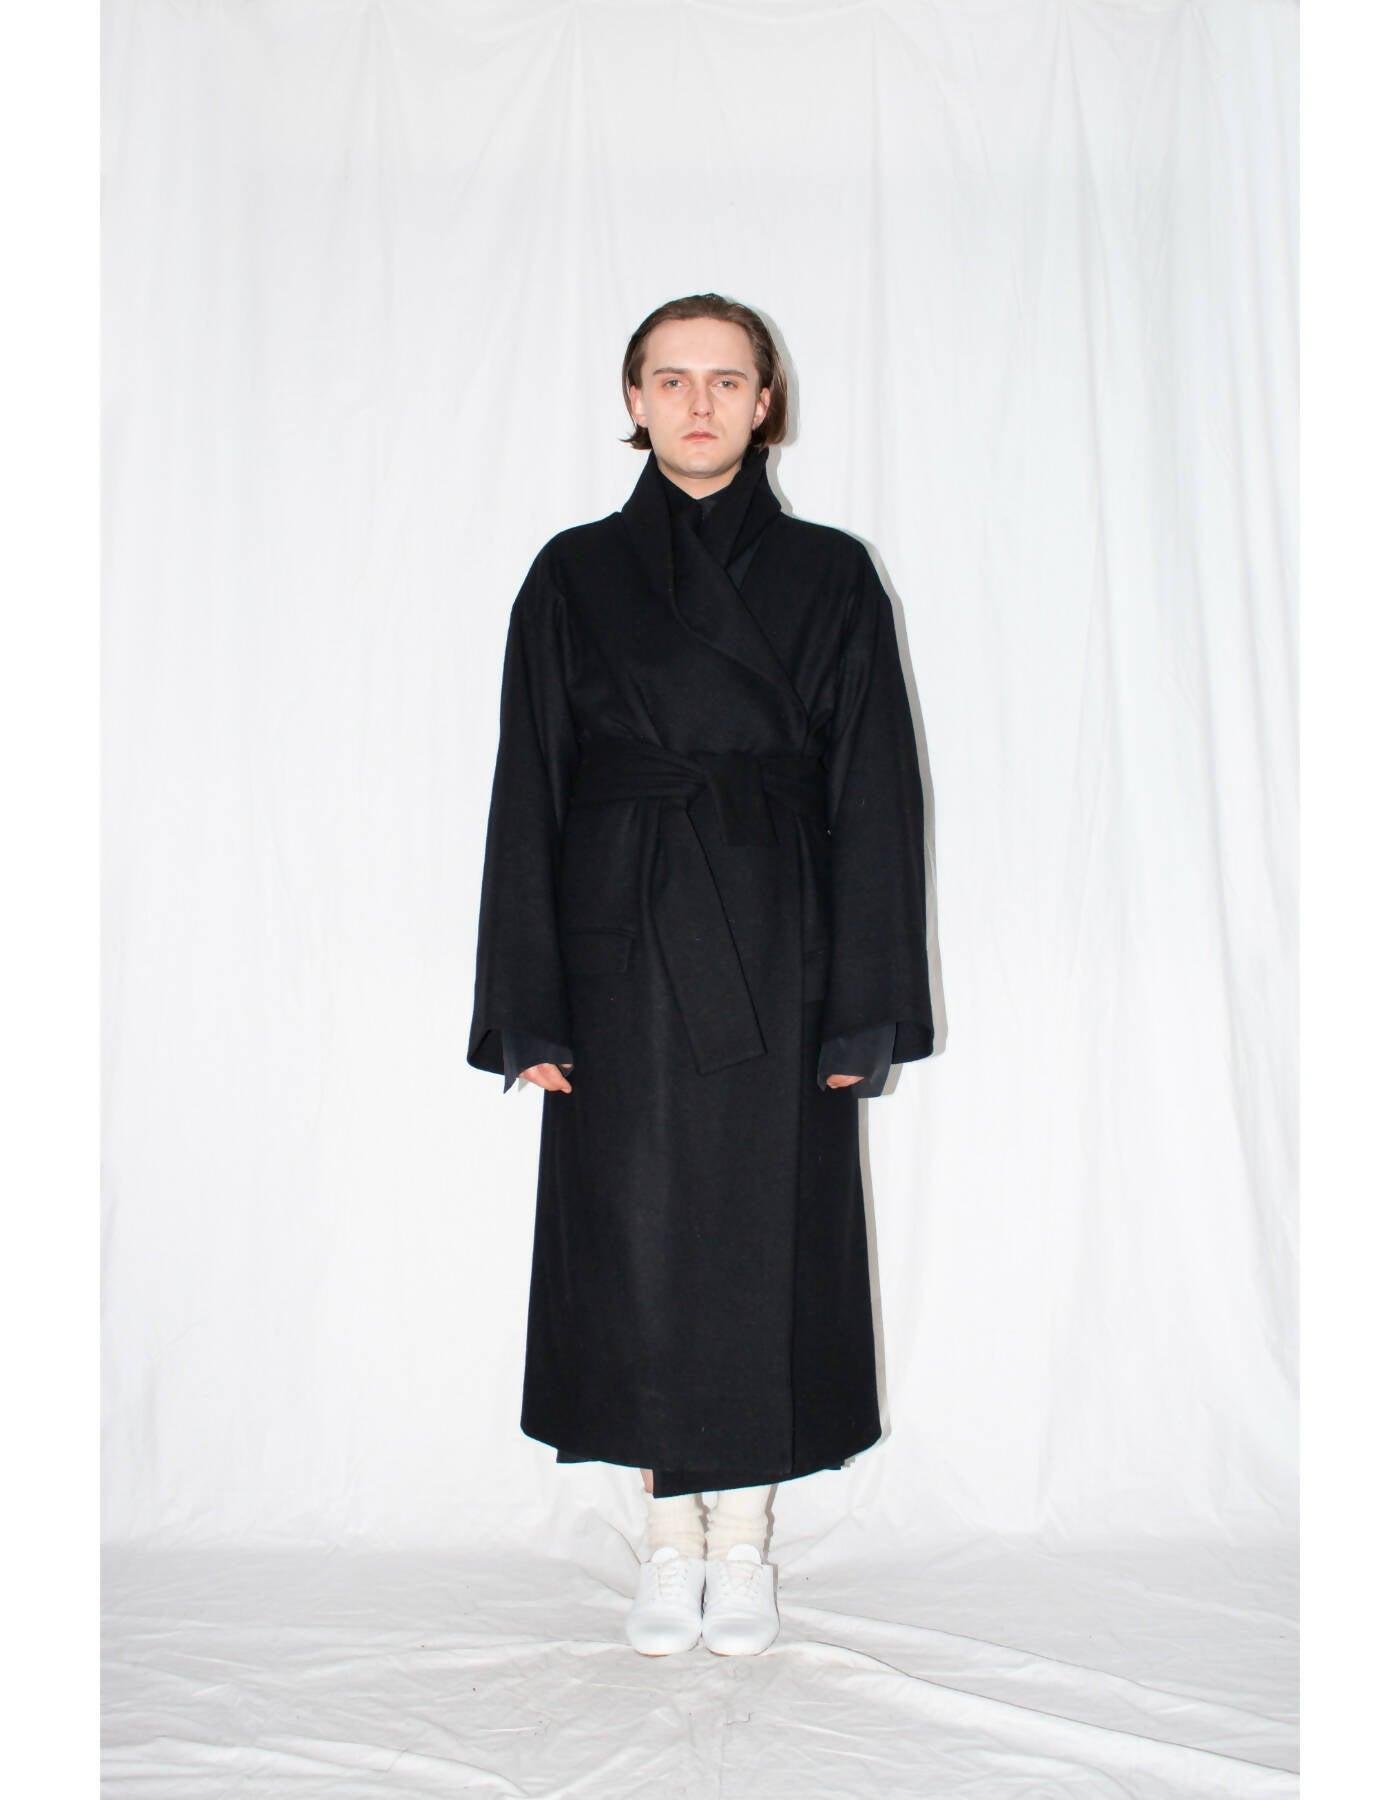 Black Oversized Shawl Coat by LUDUS